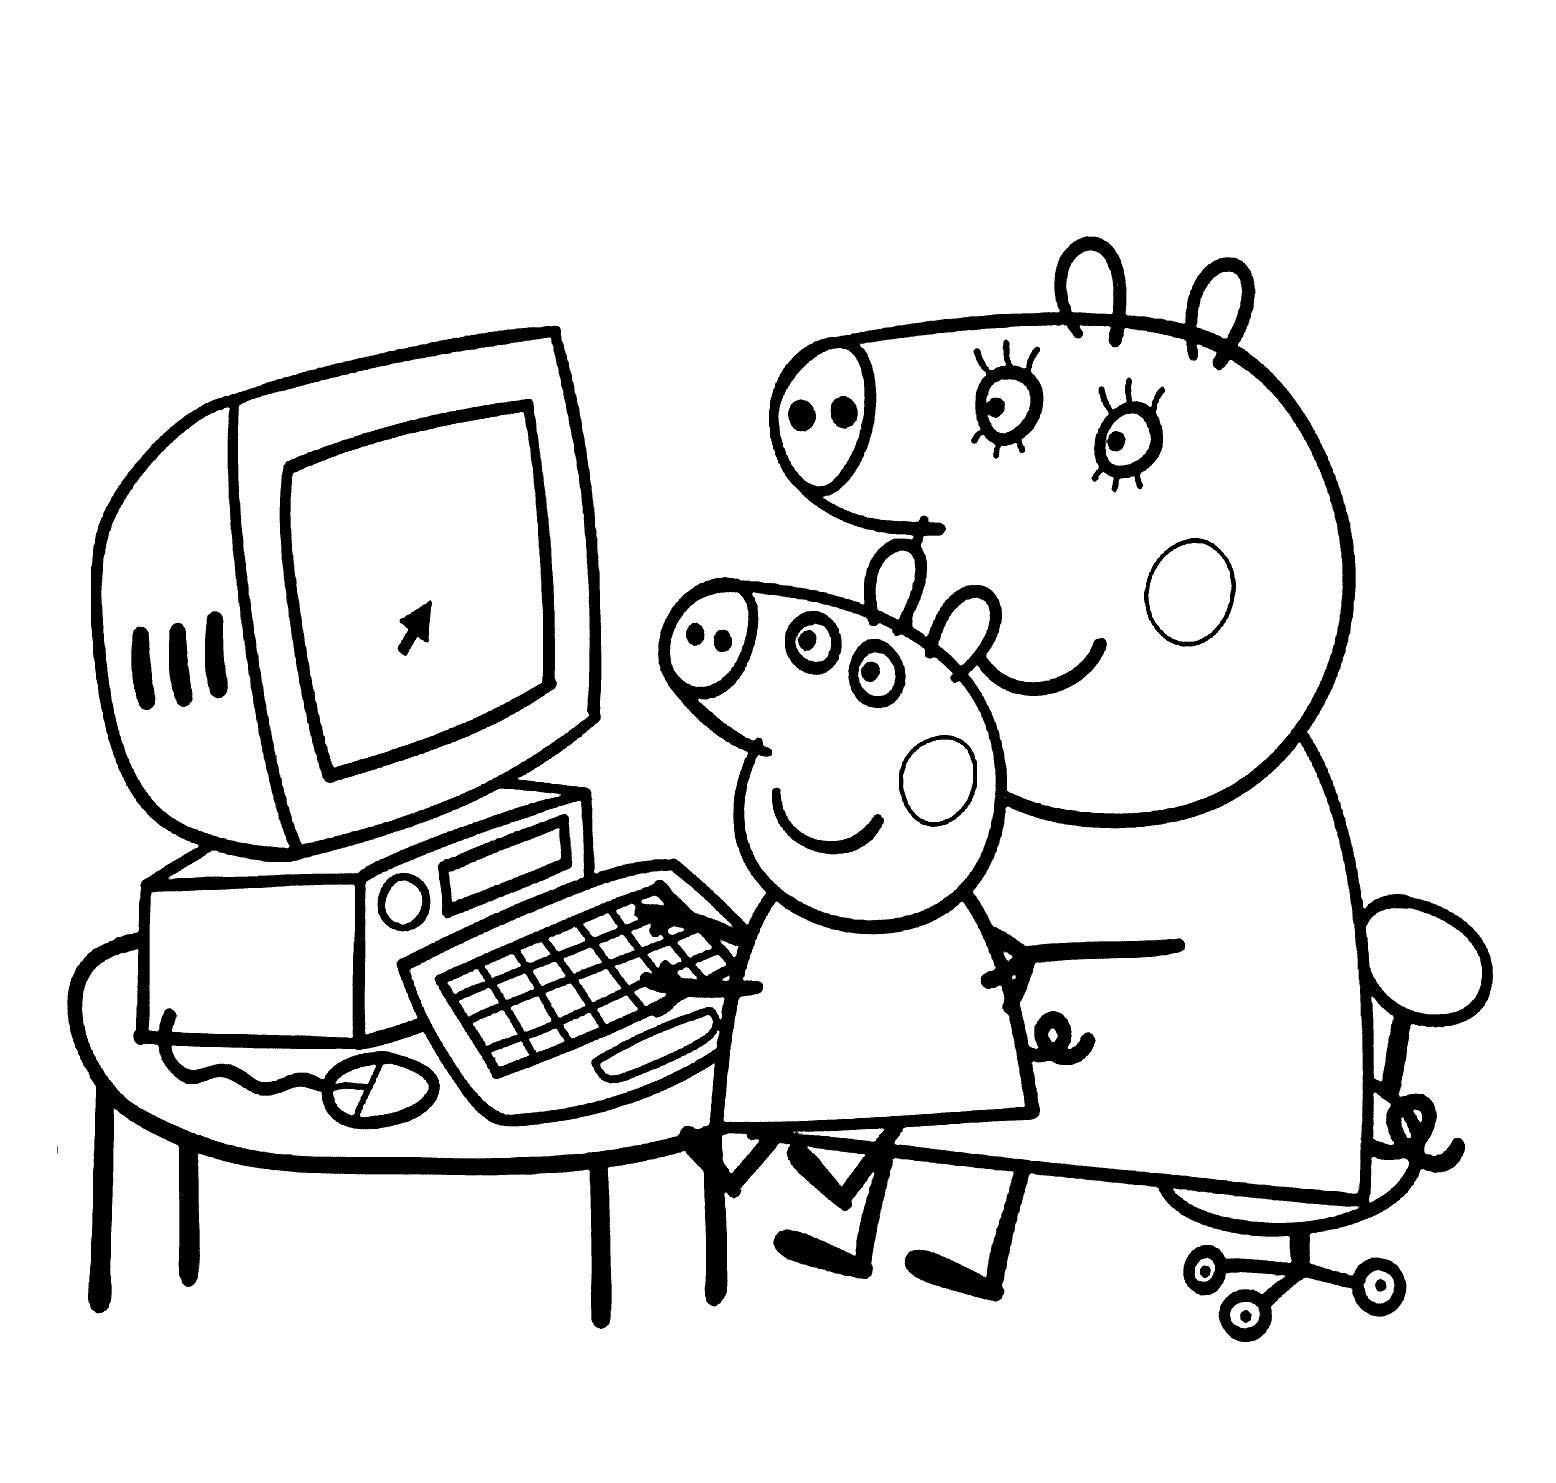 Tranh tô màu Peppa pig dạy bé chơi máy tính